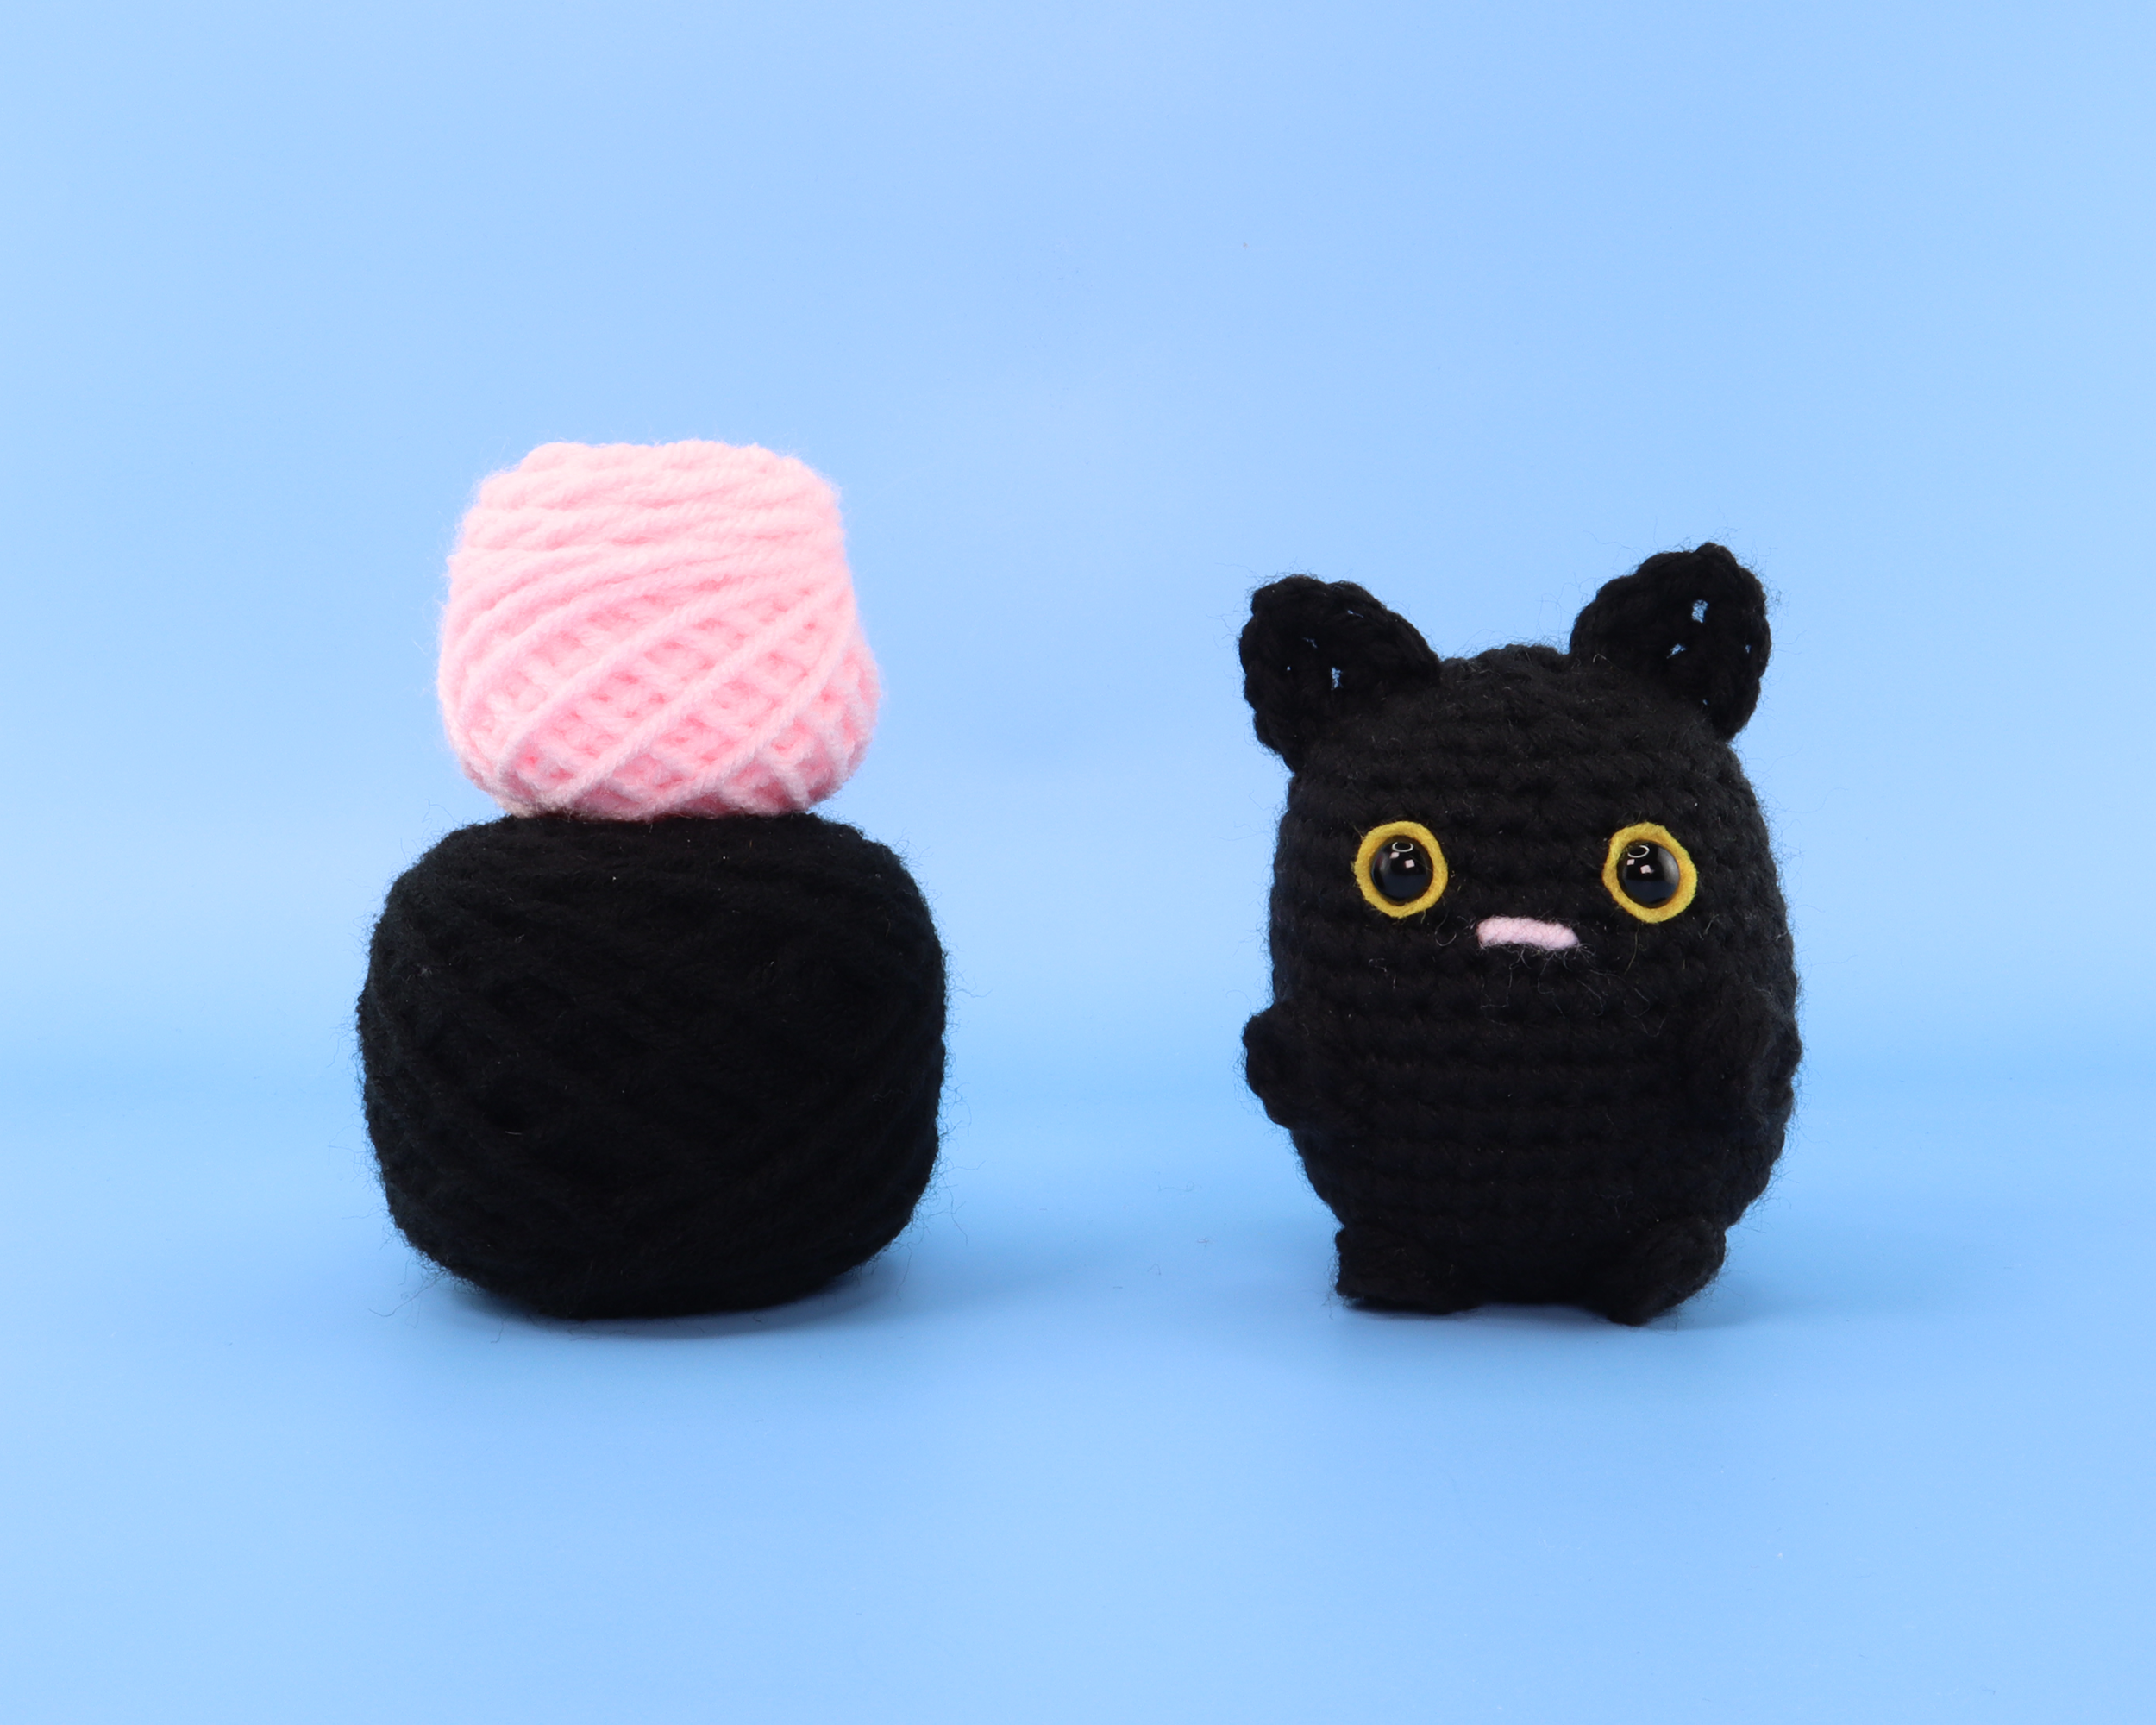 Cat Crochet Kit